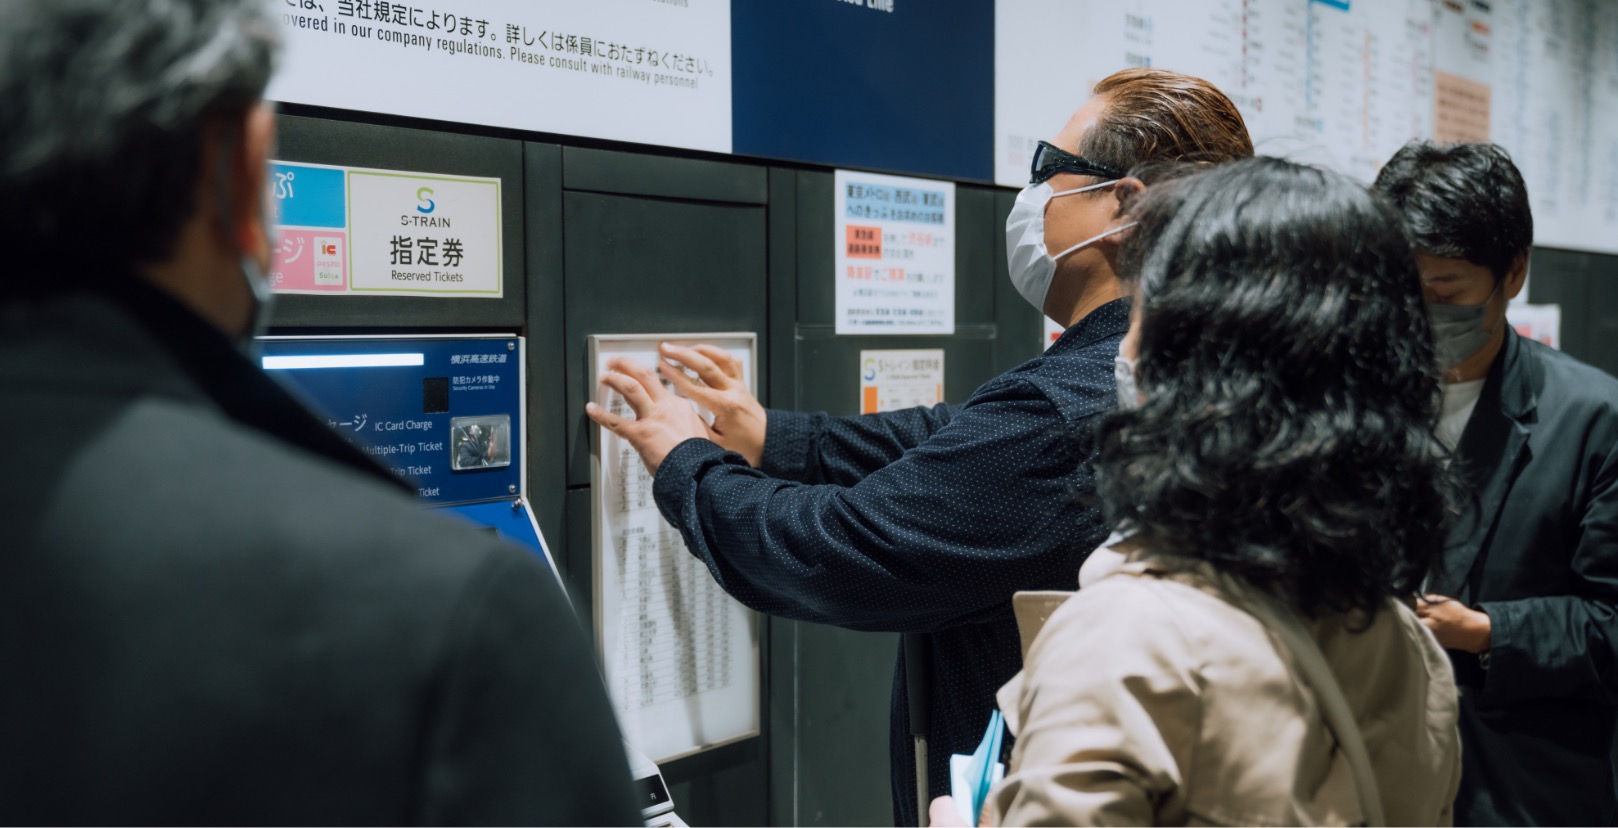 佐藤 尋宣さんが切符売り場の料金表を触っている写真